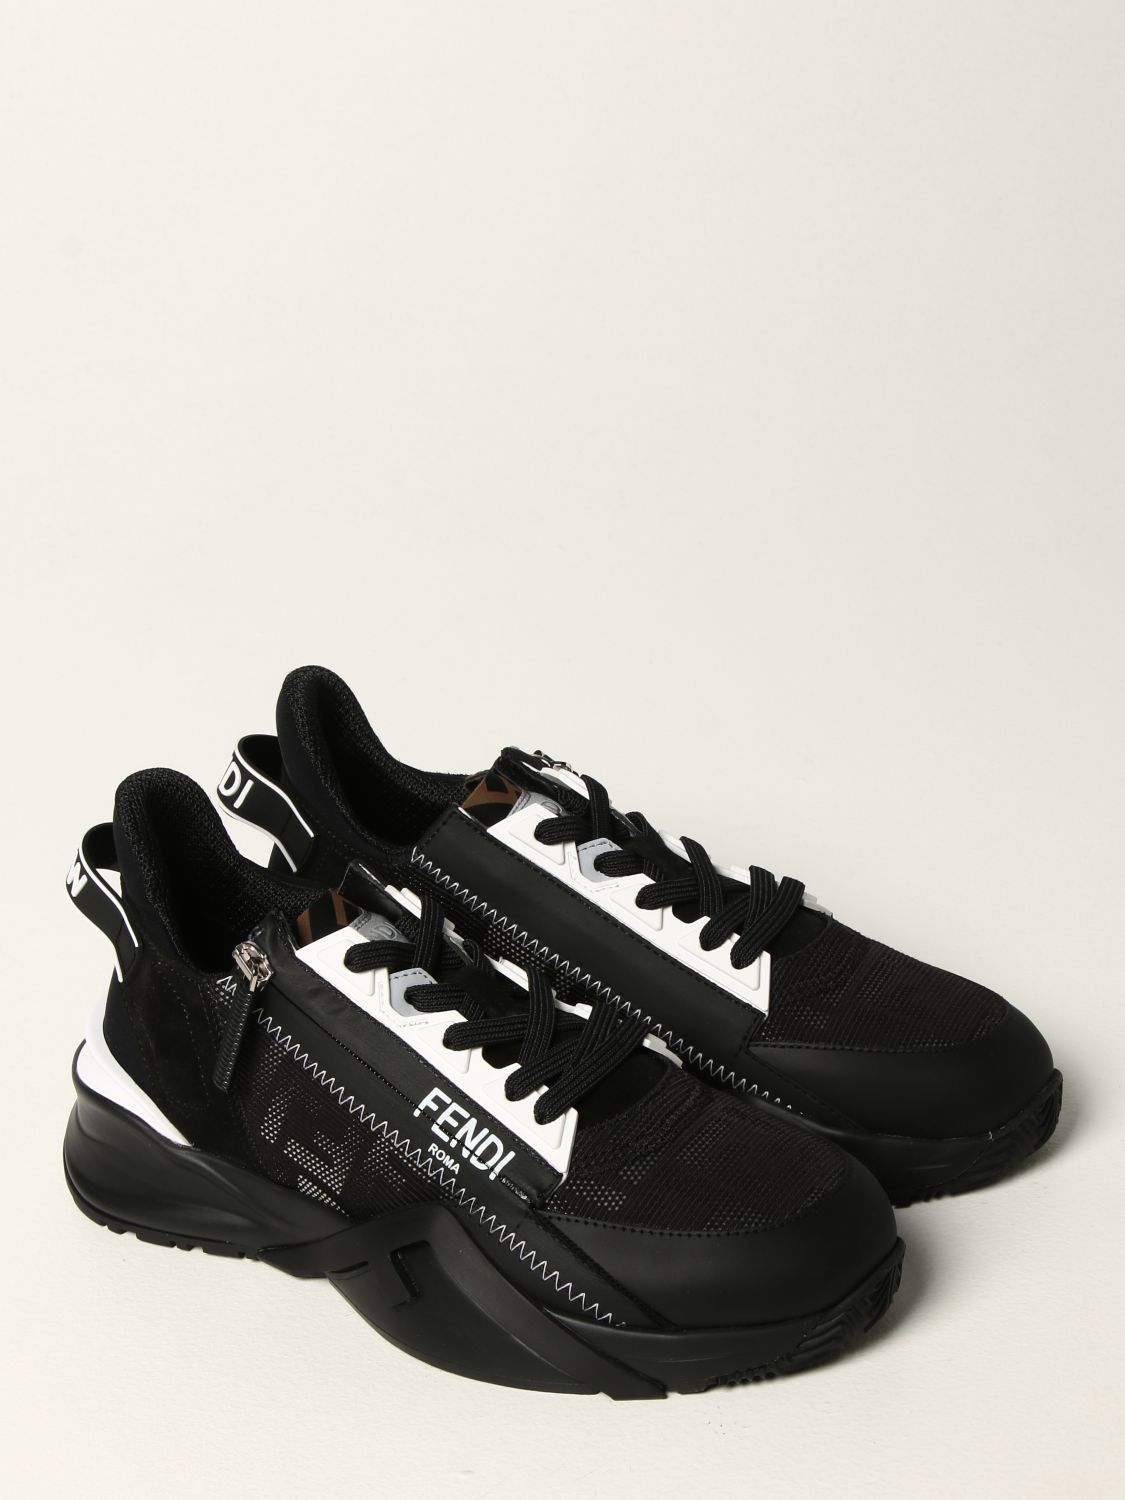 Fendi Women's Sneakers - Black - US 7